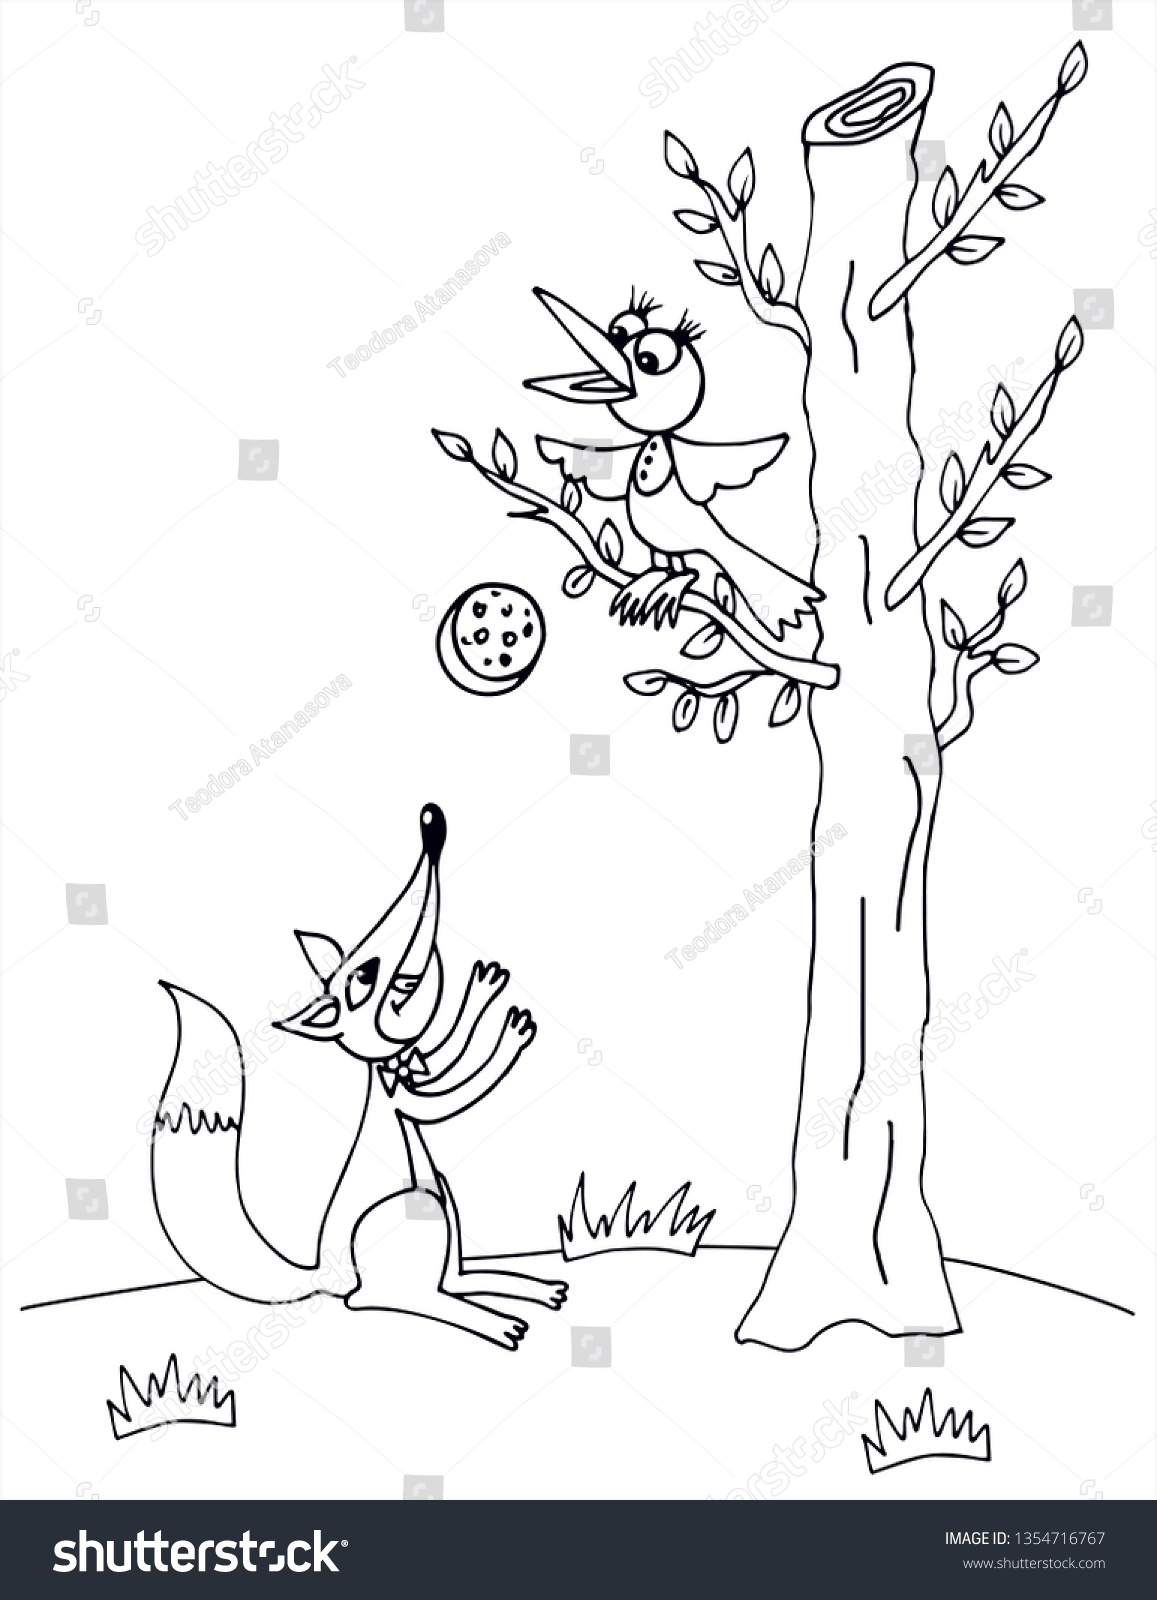 Иллюстрации к басням Крылова раскраски ворона и лисица